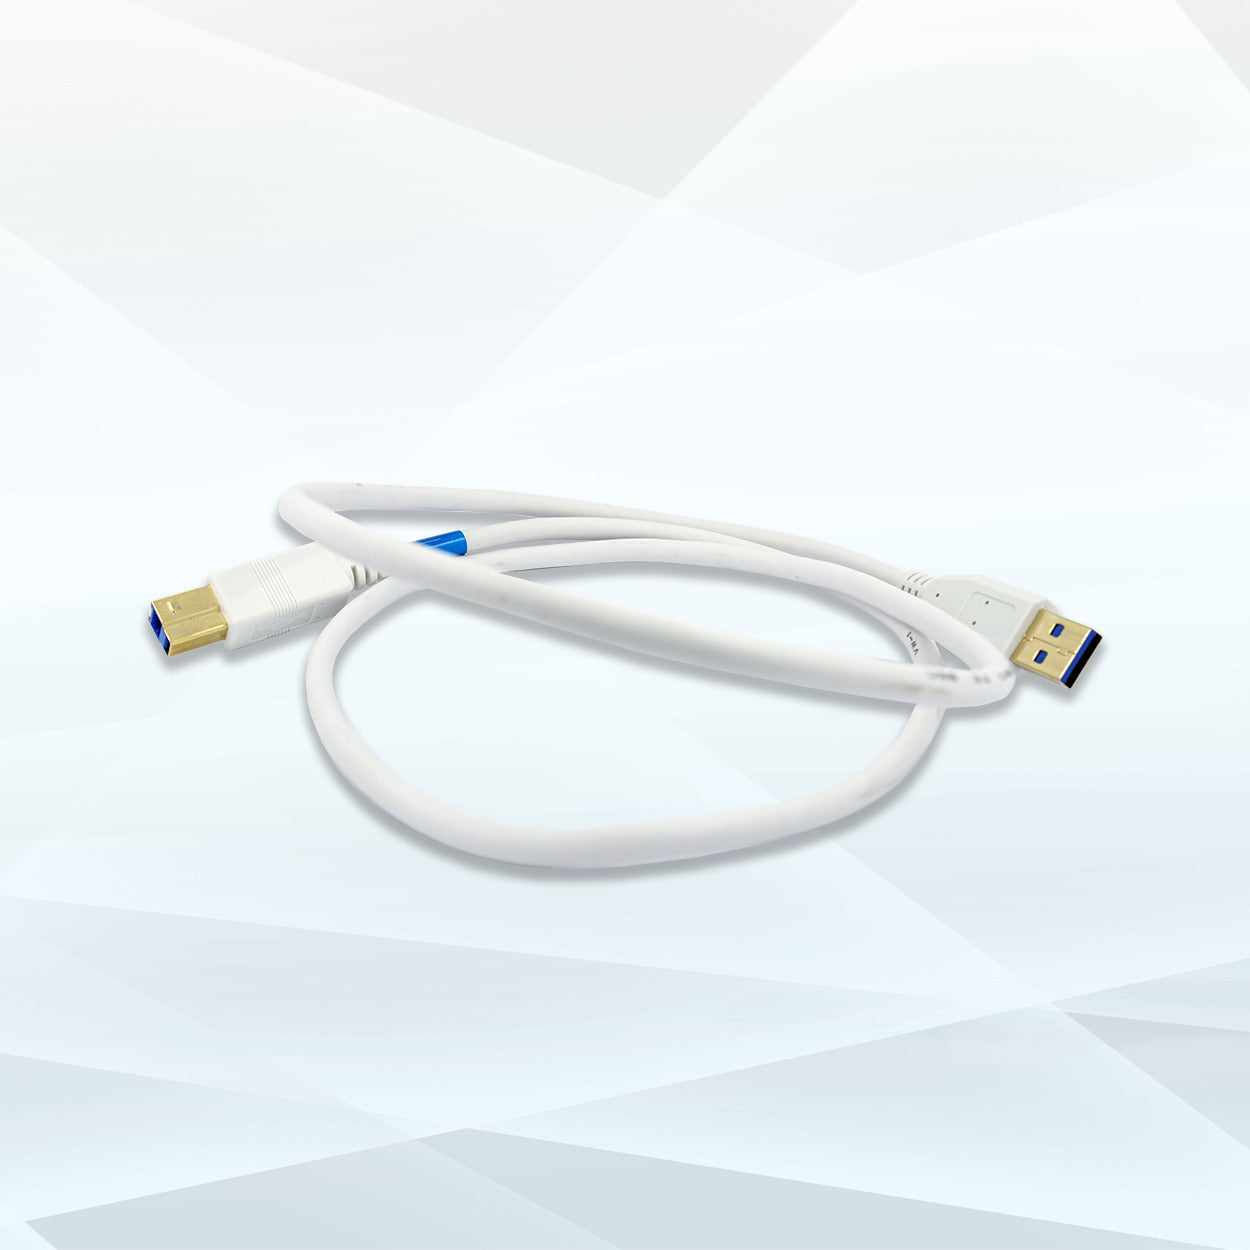 Medit i500 USB 3.0 Cable